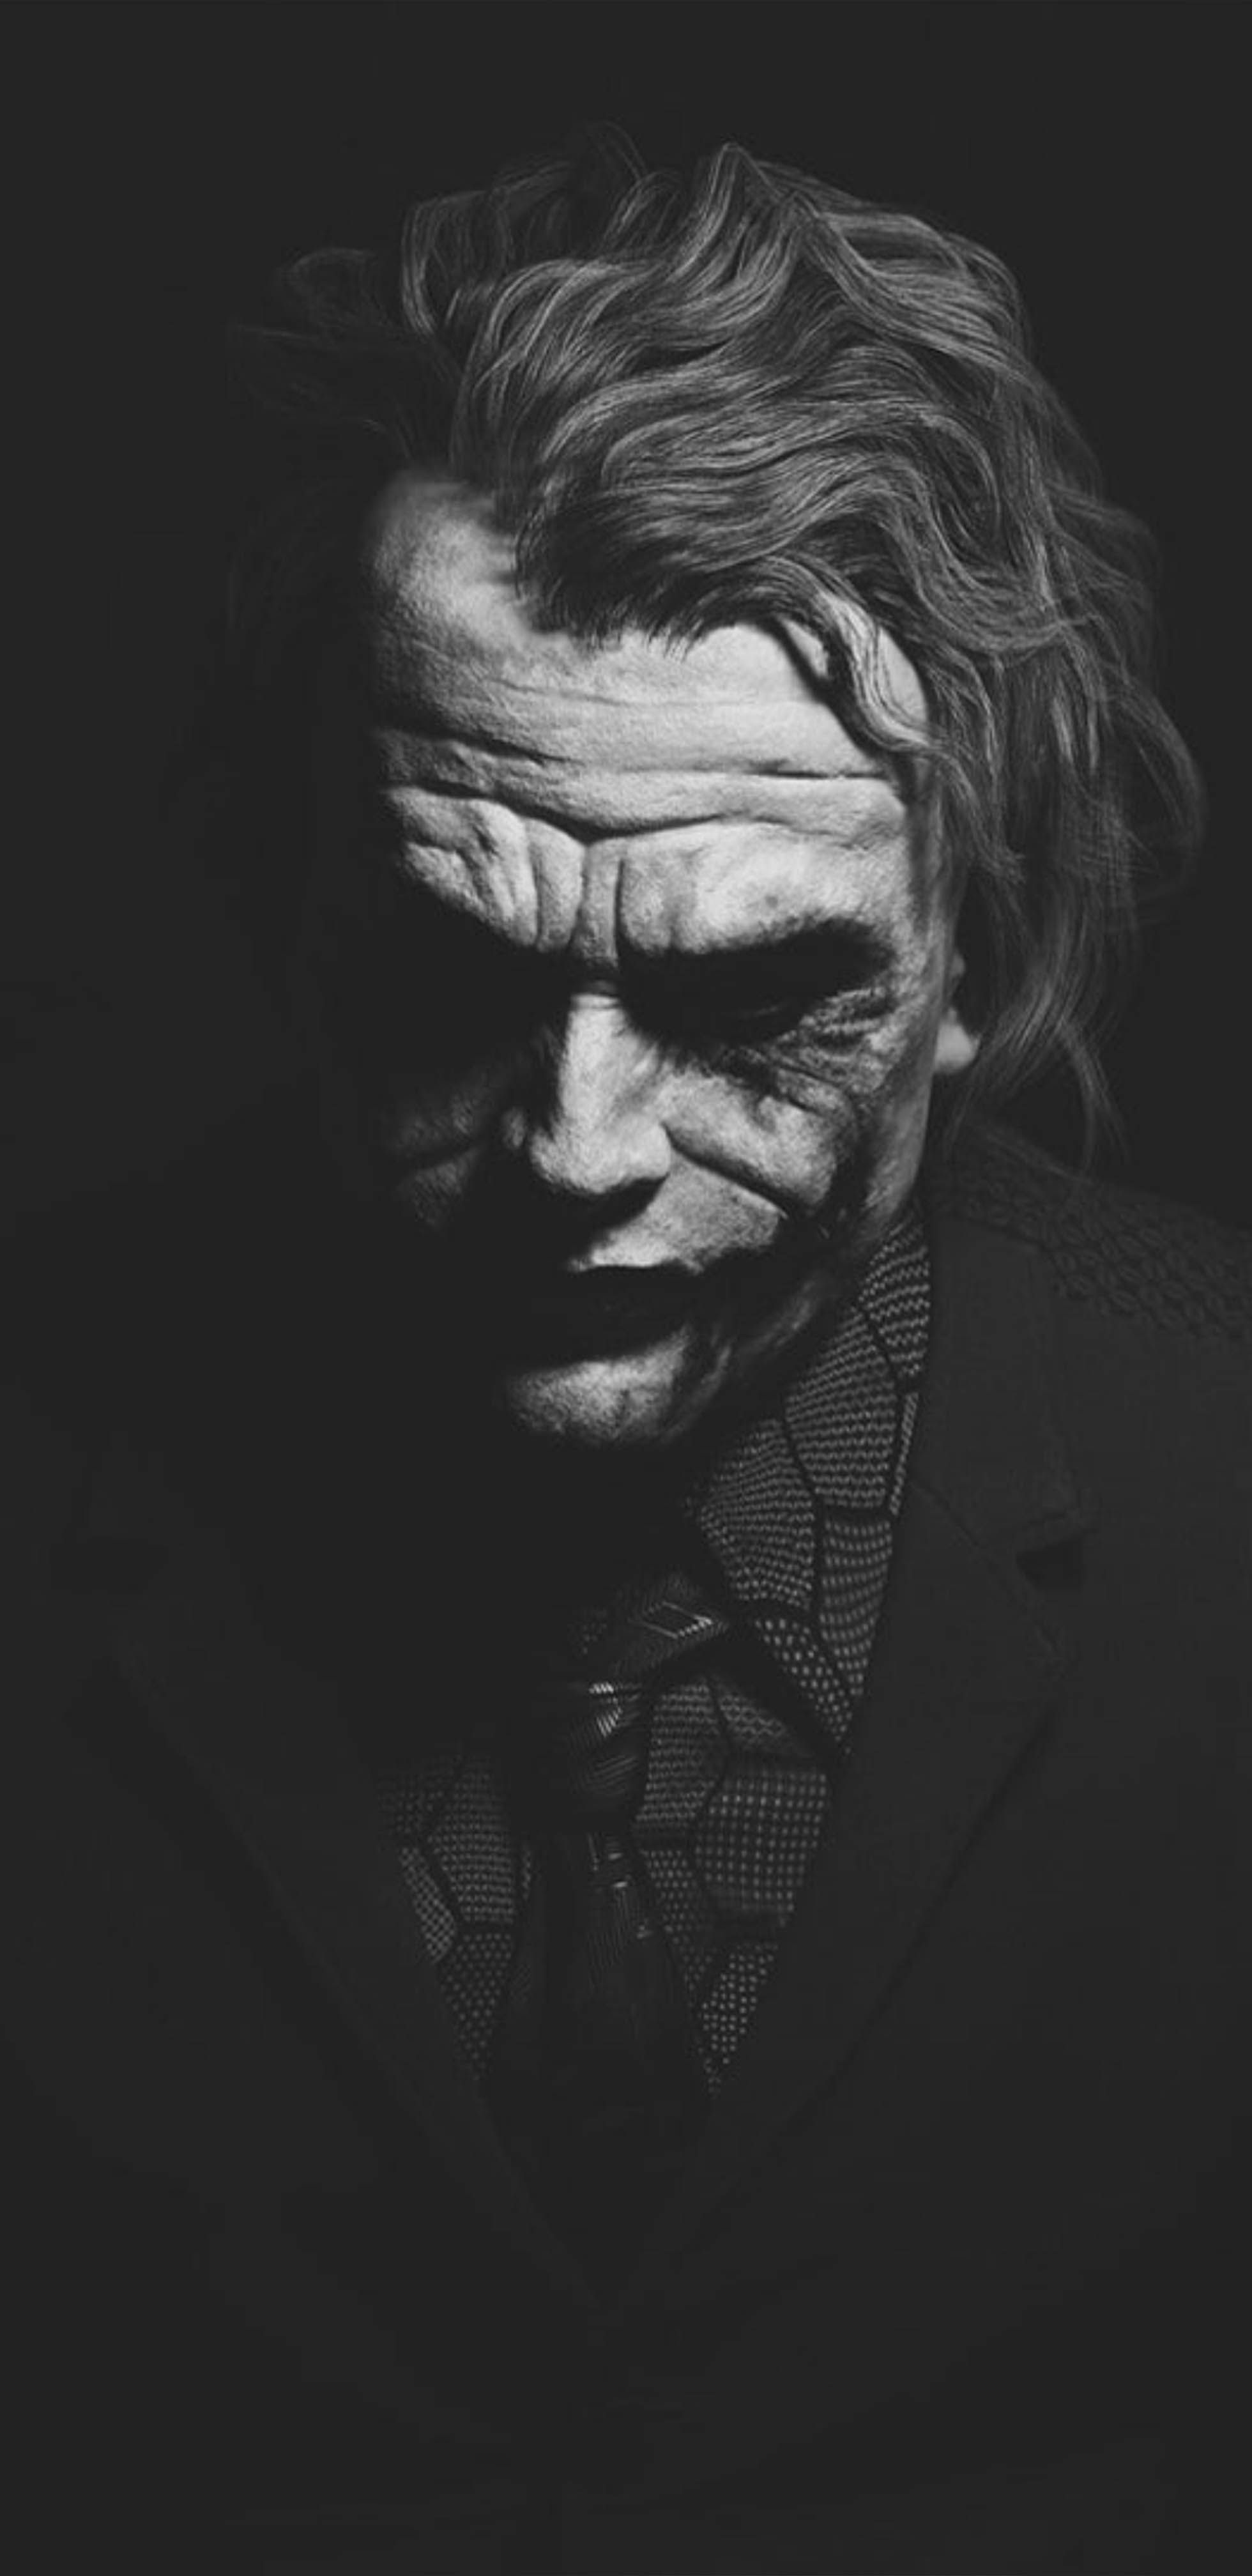 Heath Ledger Joker Black & White Dark Background 4K, 5K, 8K, Desktop & Mobile Background Wallpaper